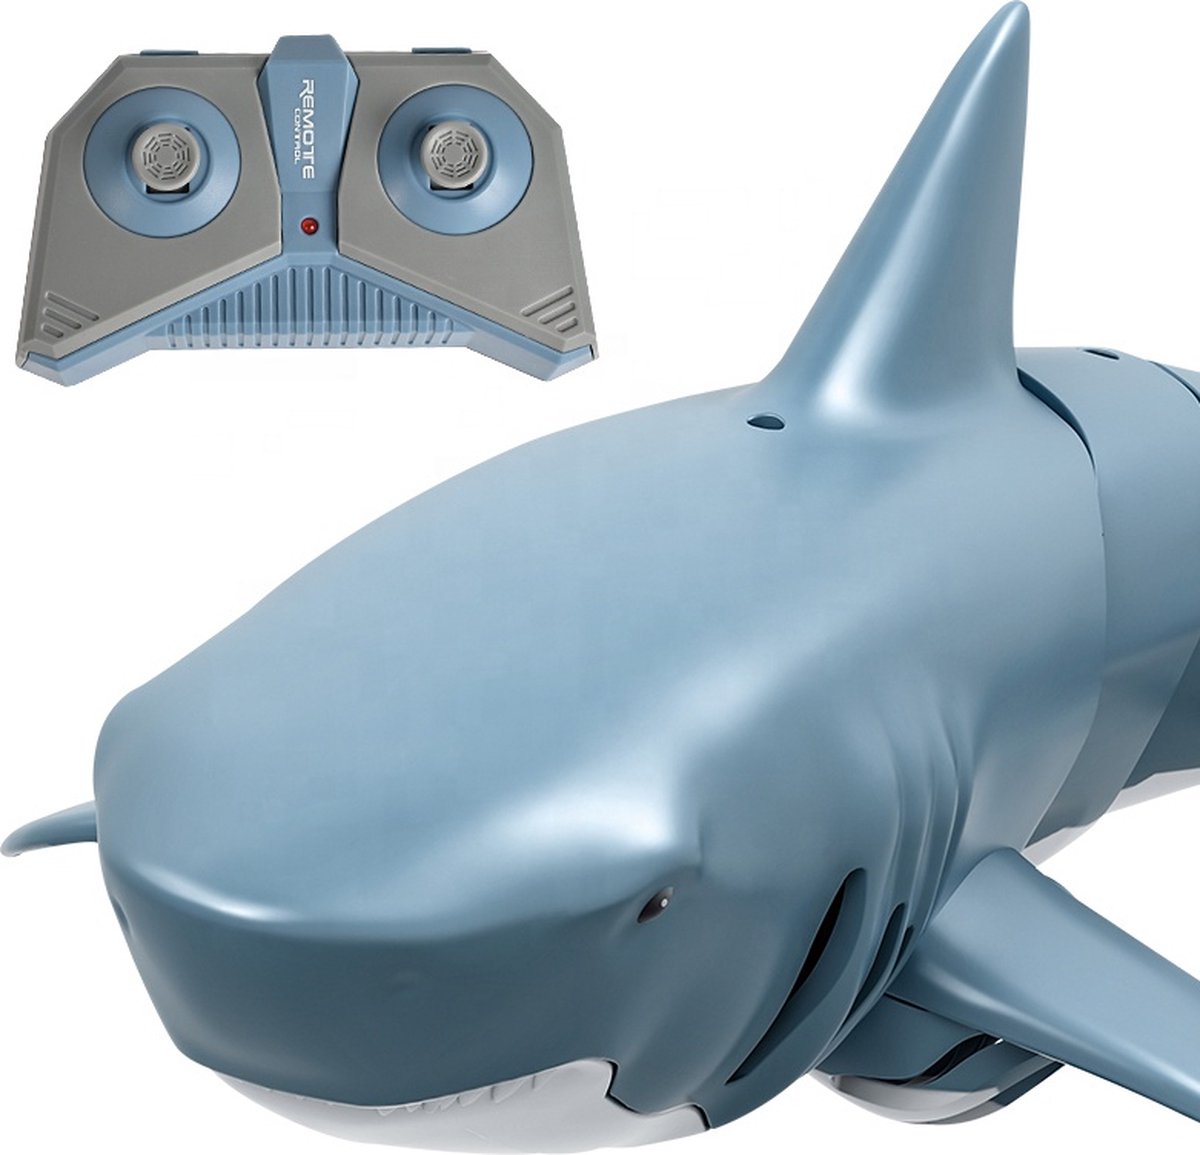 Haai speelgoed | 2.4G Remote control water shark. | R/C Shark - Bestuurbare Haai - Op afstand te besturen | Haai met afstandsbediening | haai speelgoed